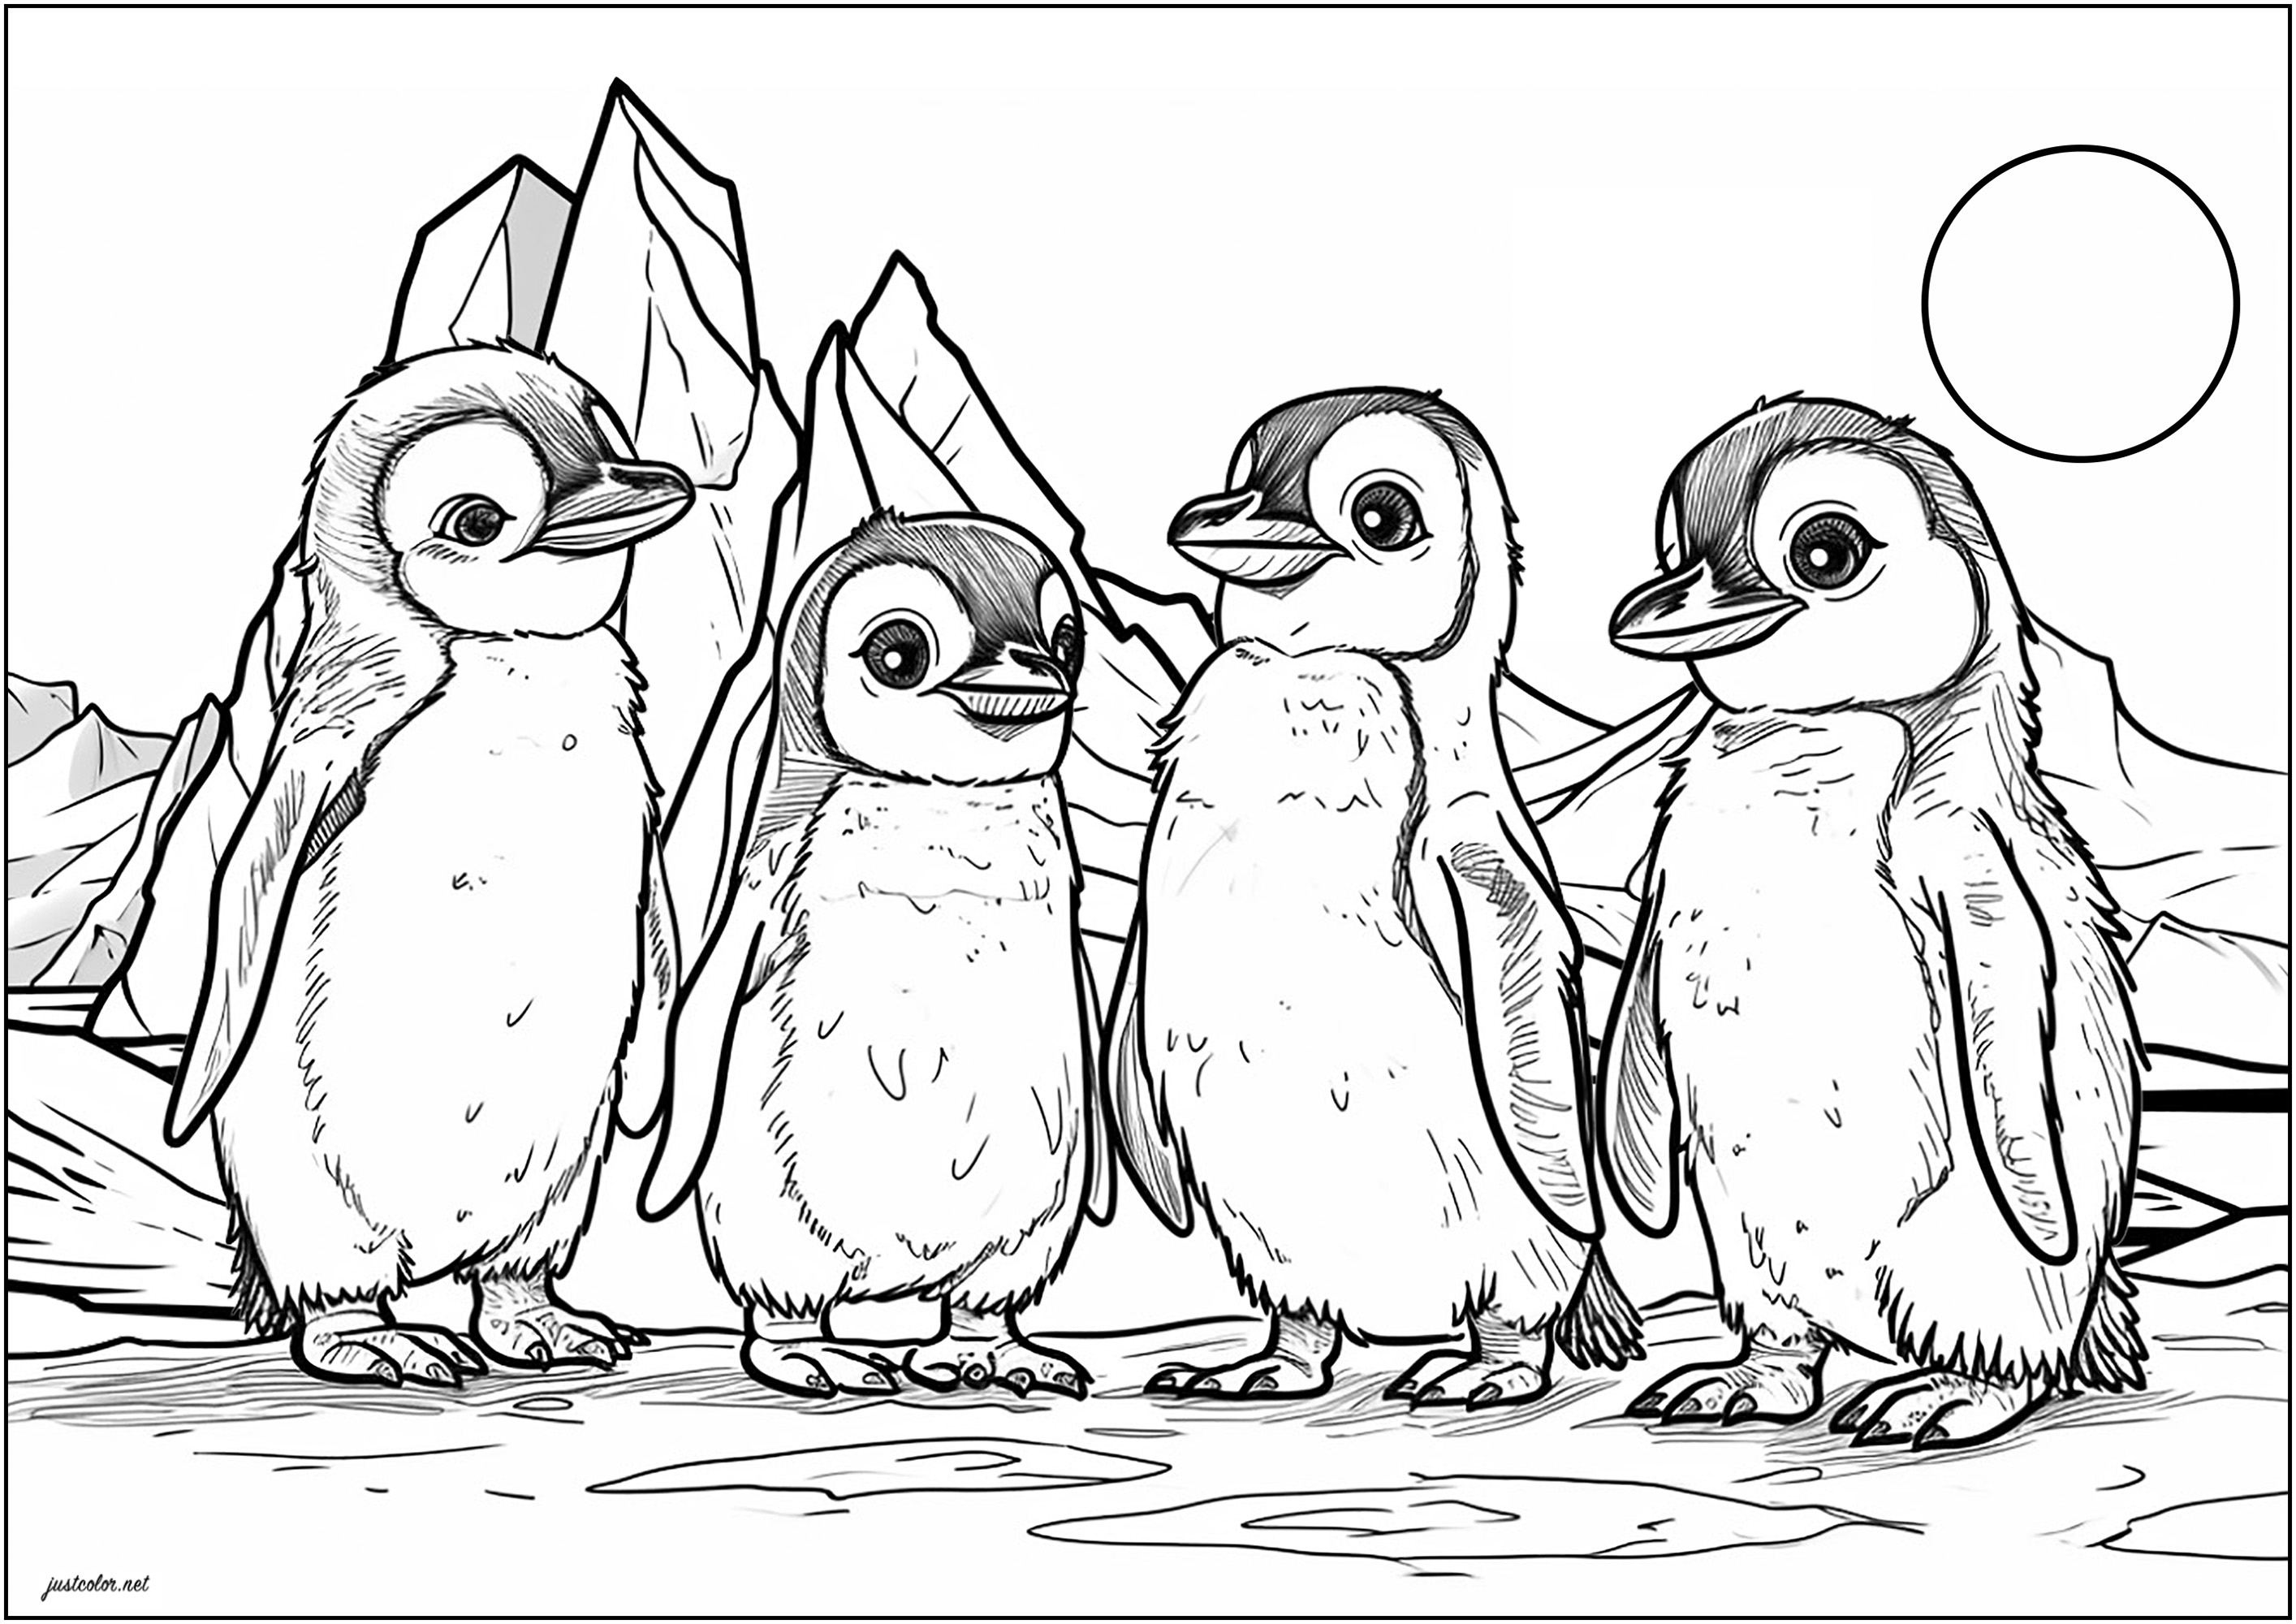 Vier kleine Pinguine auf der Eisscholle